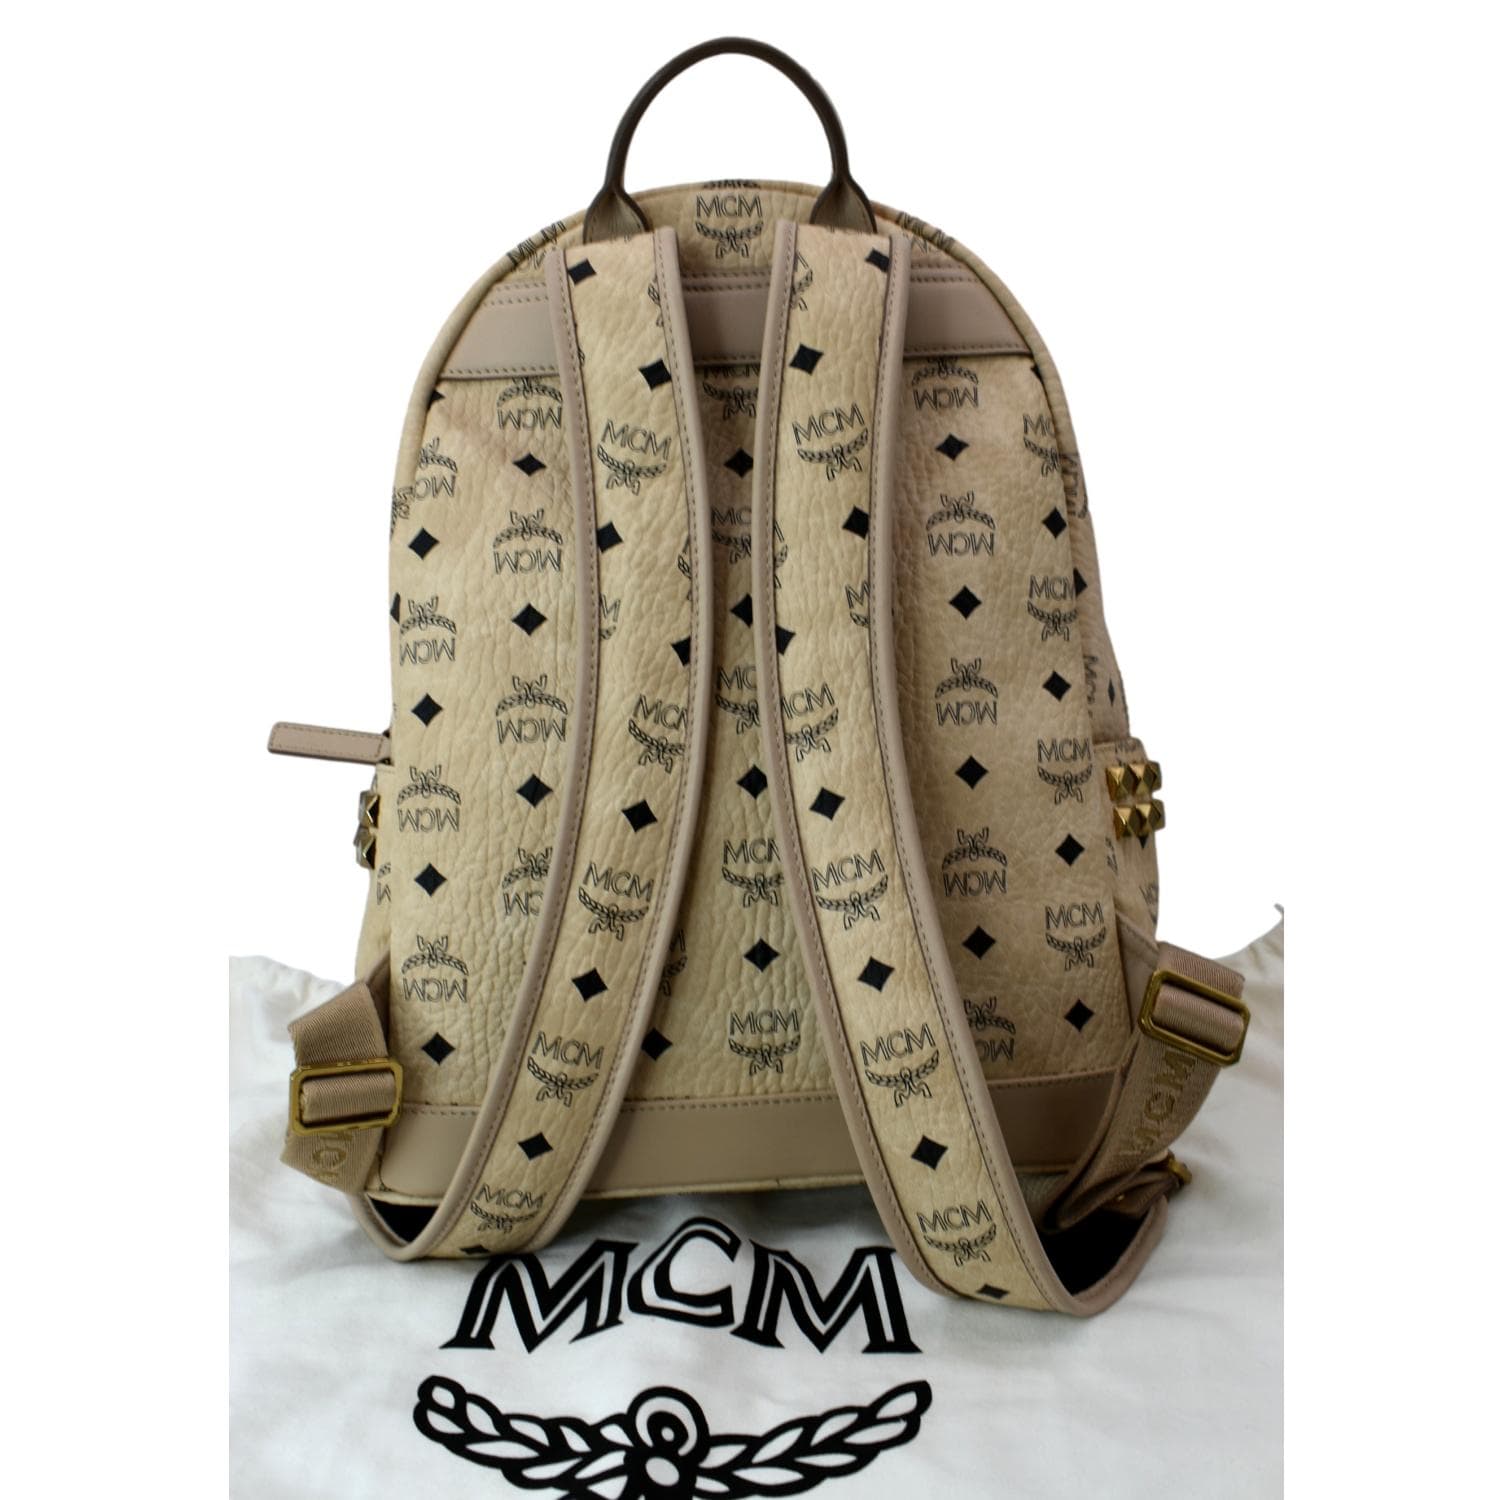 MCM BackPack  Mcm backpack, Mcm bags, Mcm bag backpacks